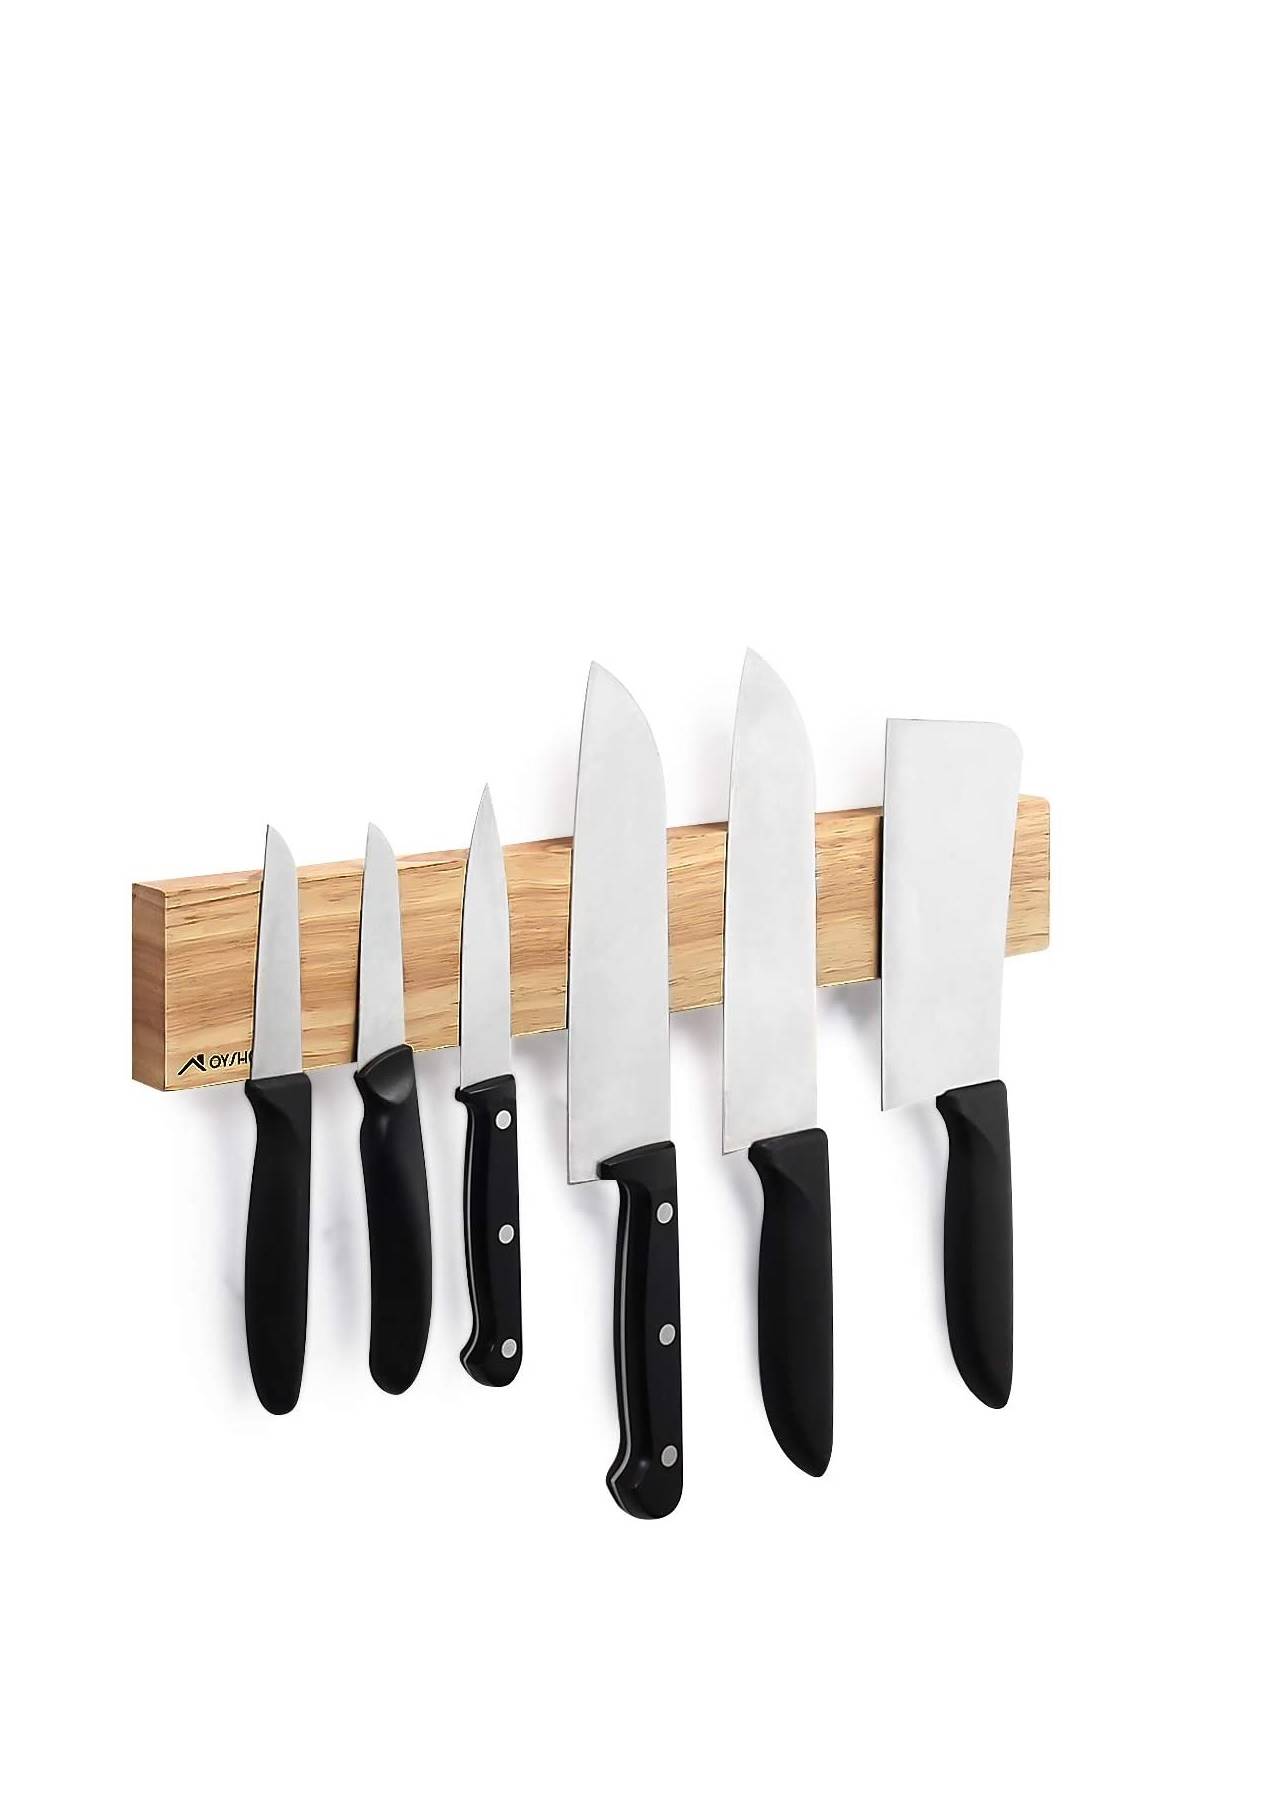 renovar cocina sin obras soporte magnético para cuchillos Amazon, 15,99€